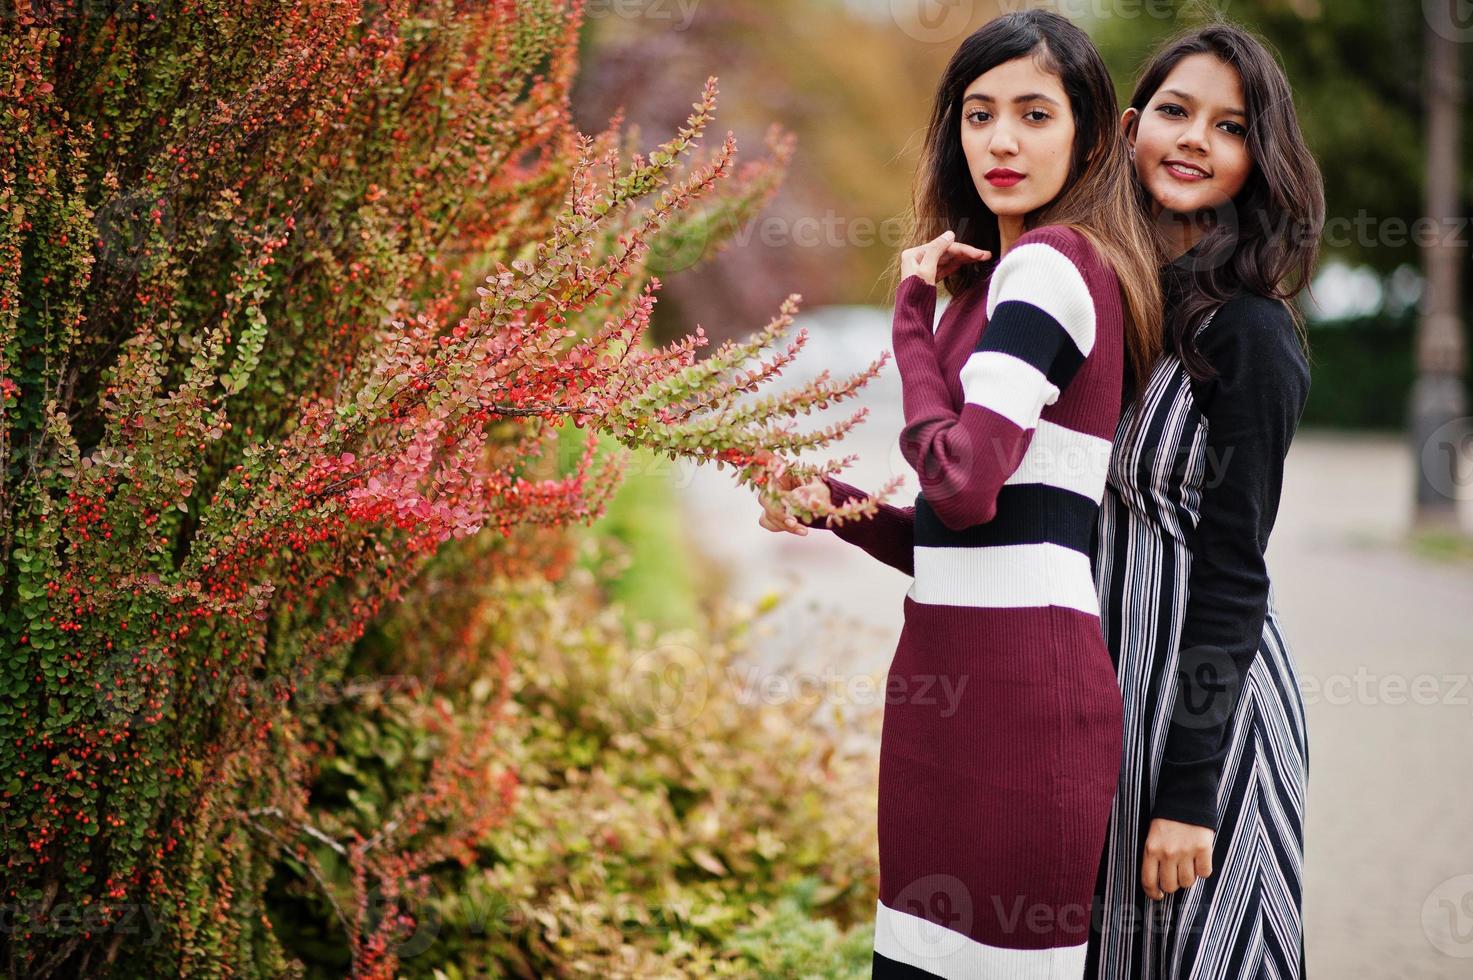 ritratto di due giovani belle ragazze adolescenti indiane o asiatiche del sud in abito poste vicino a cespugli. foto